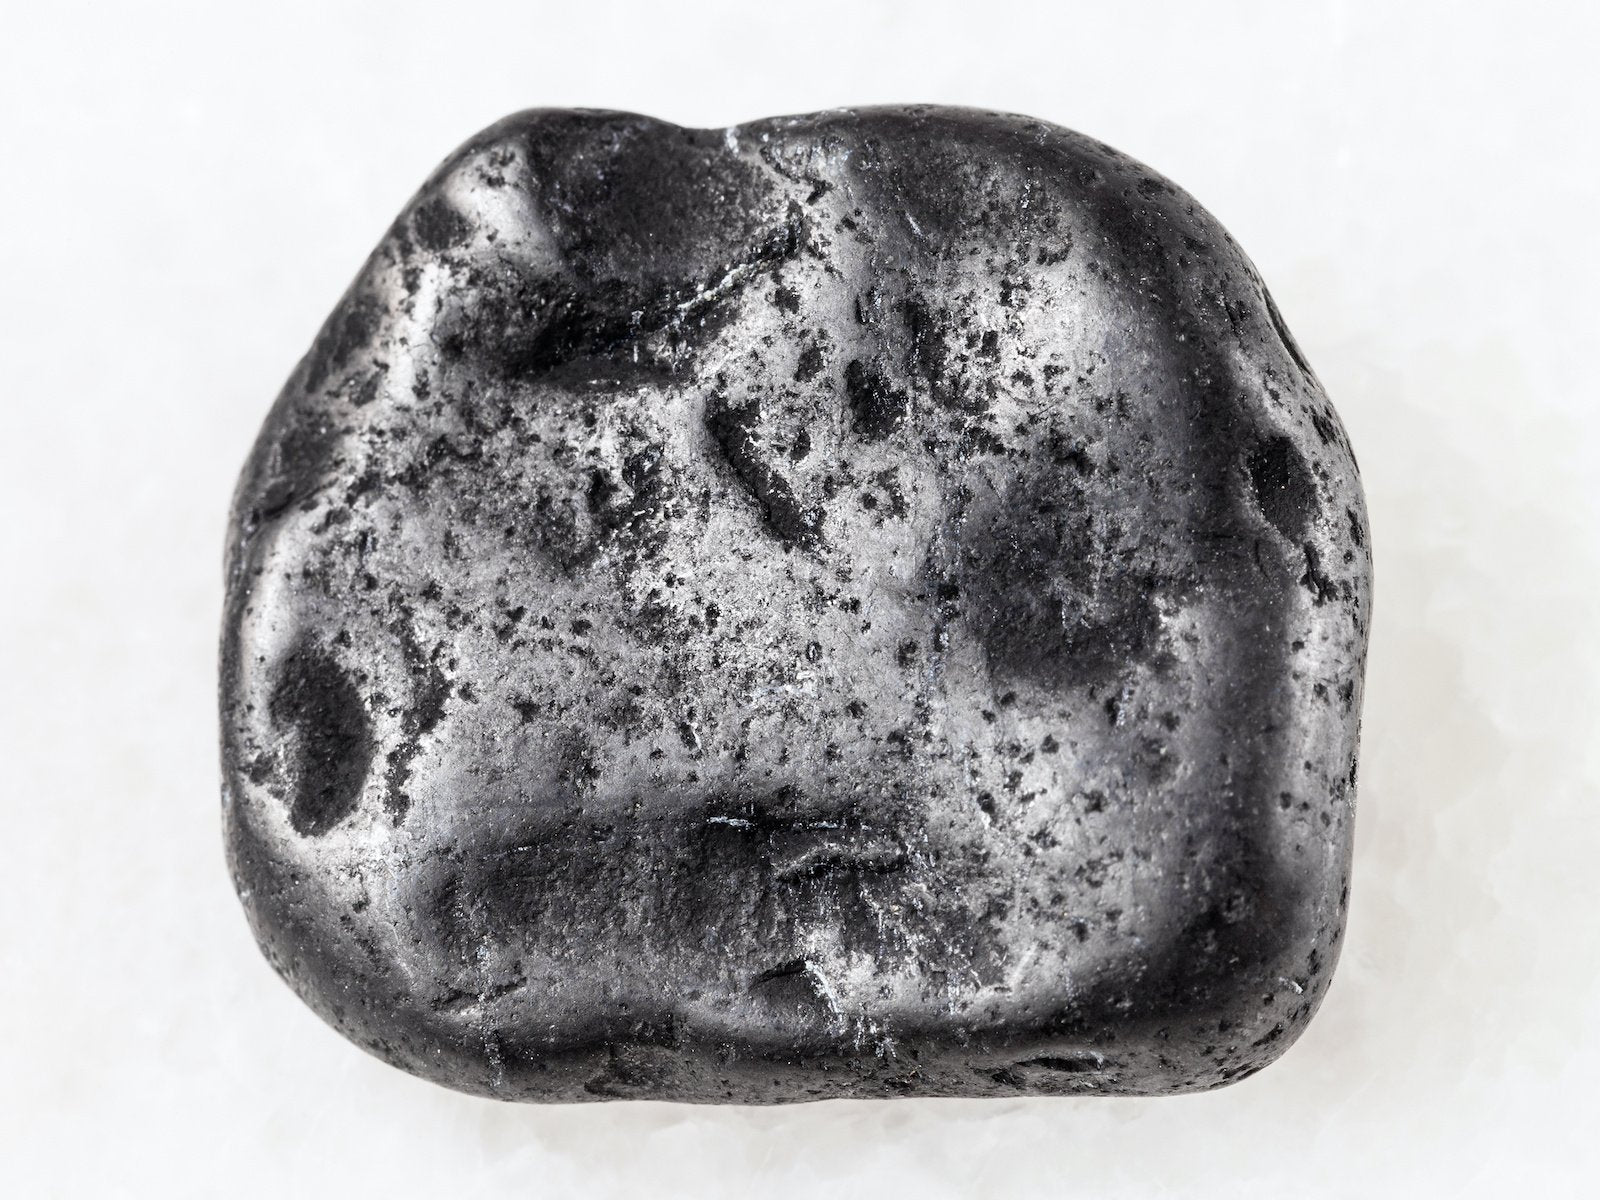 A polished raw shungite stone